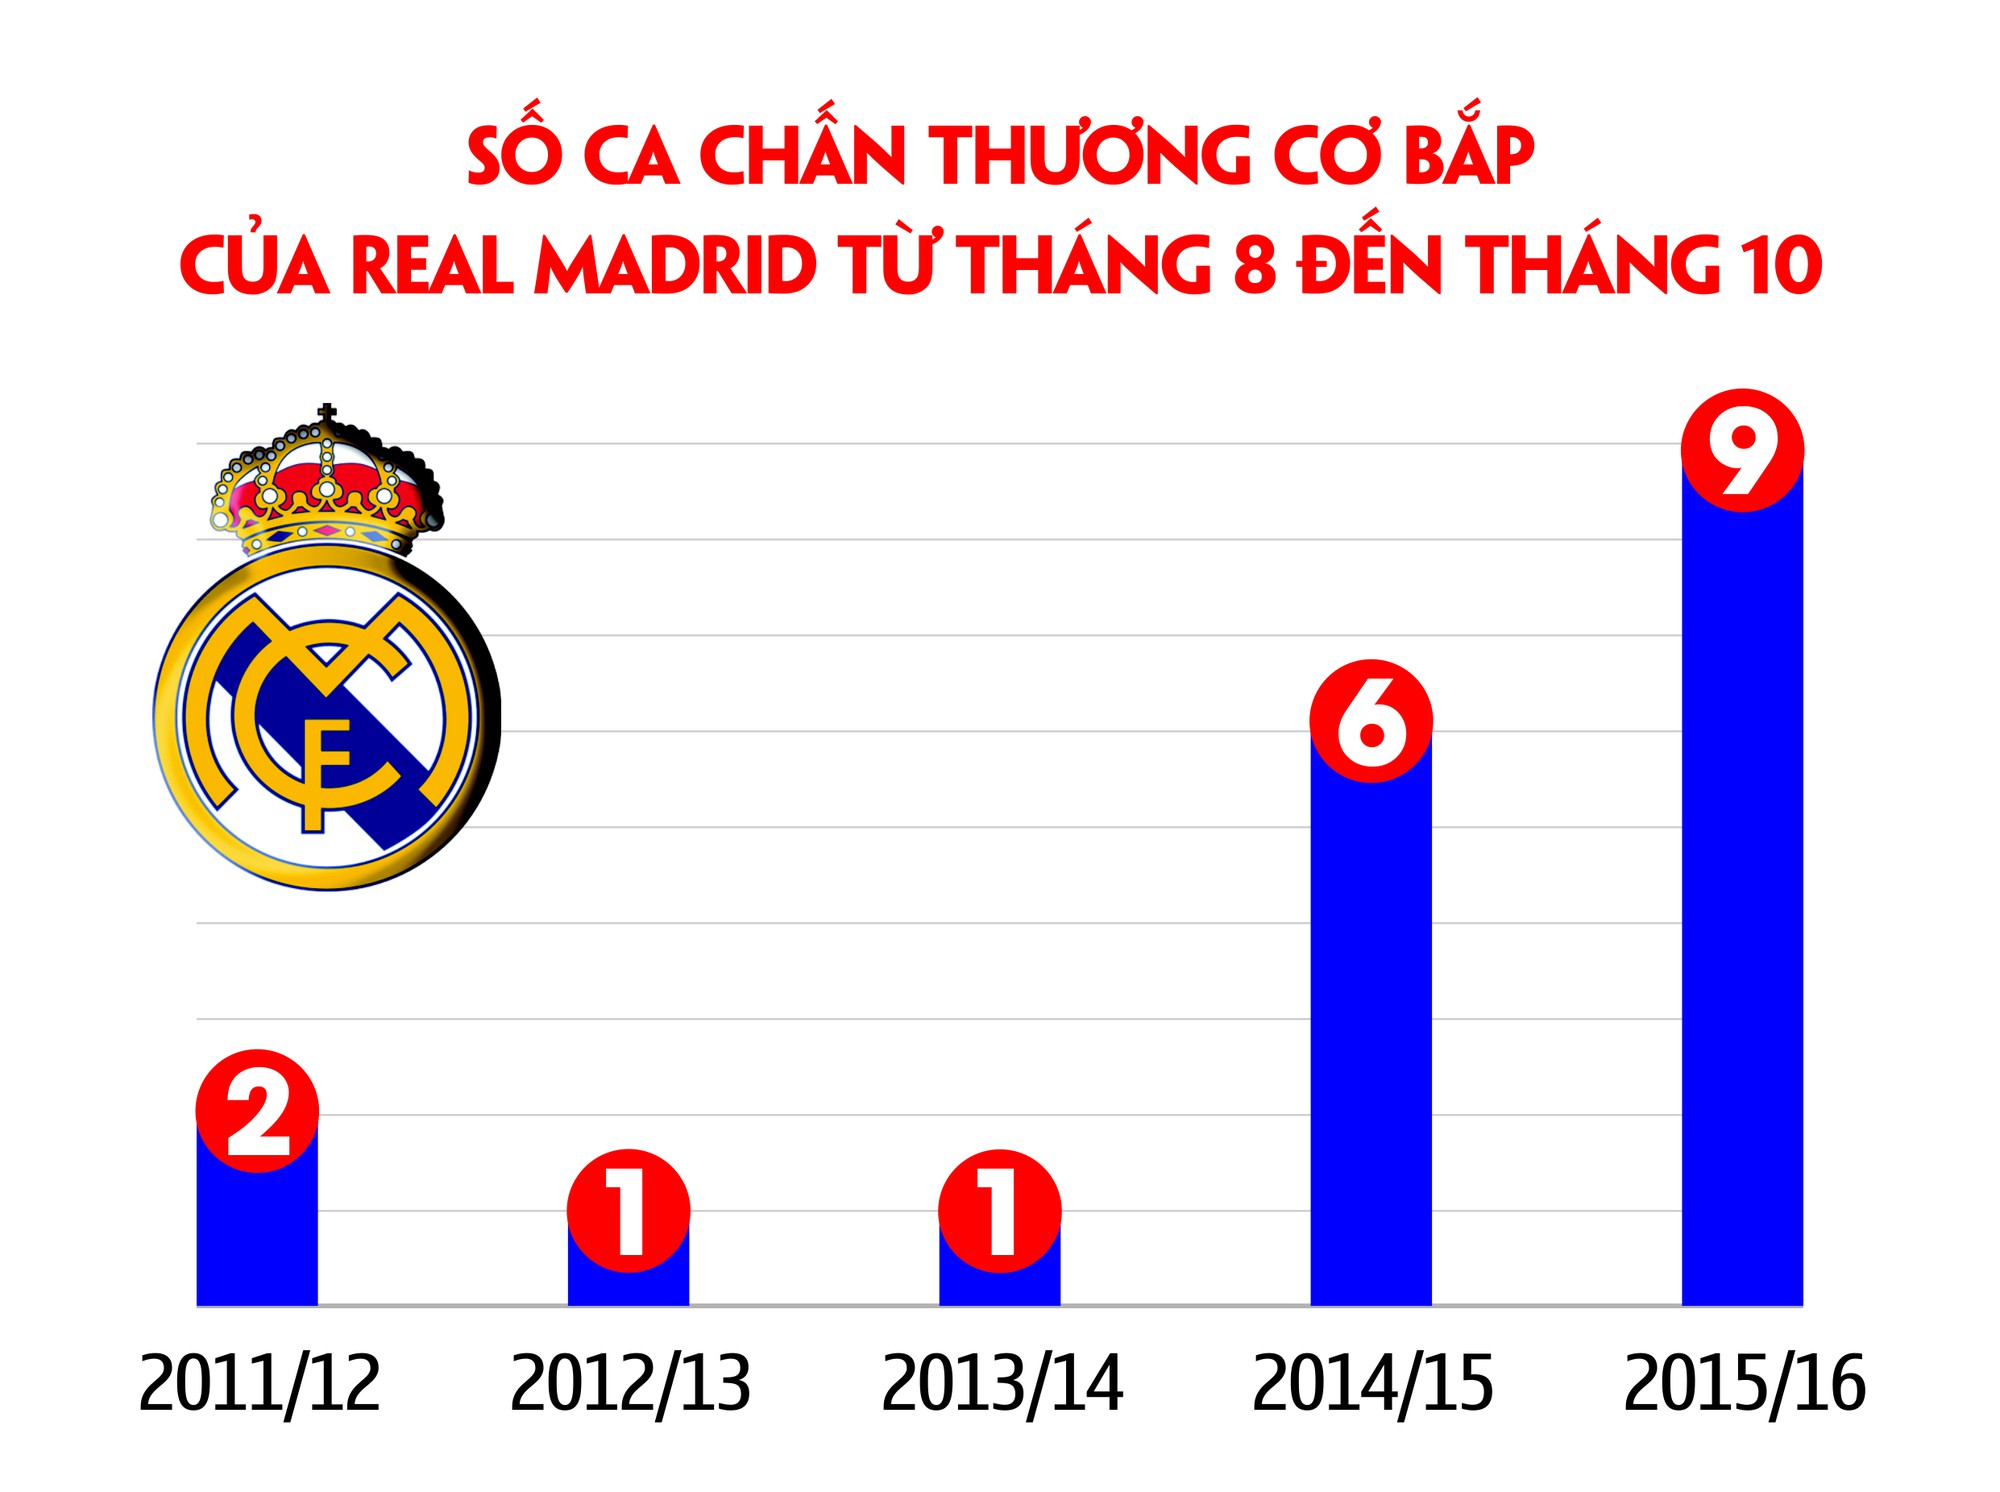 Số lượng chấn thương cơ bắp trong 3 tháng đầu của Real Madrid